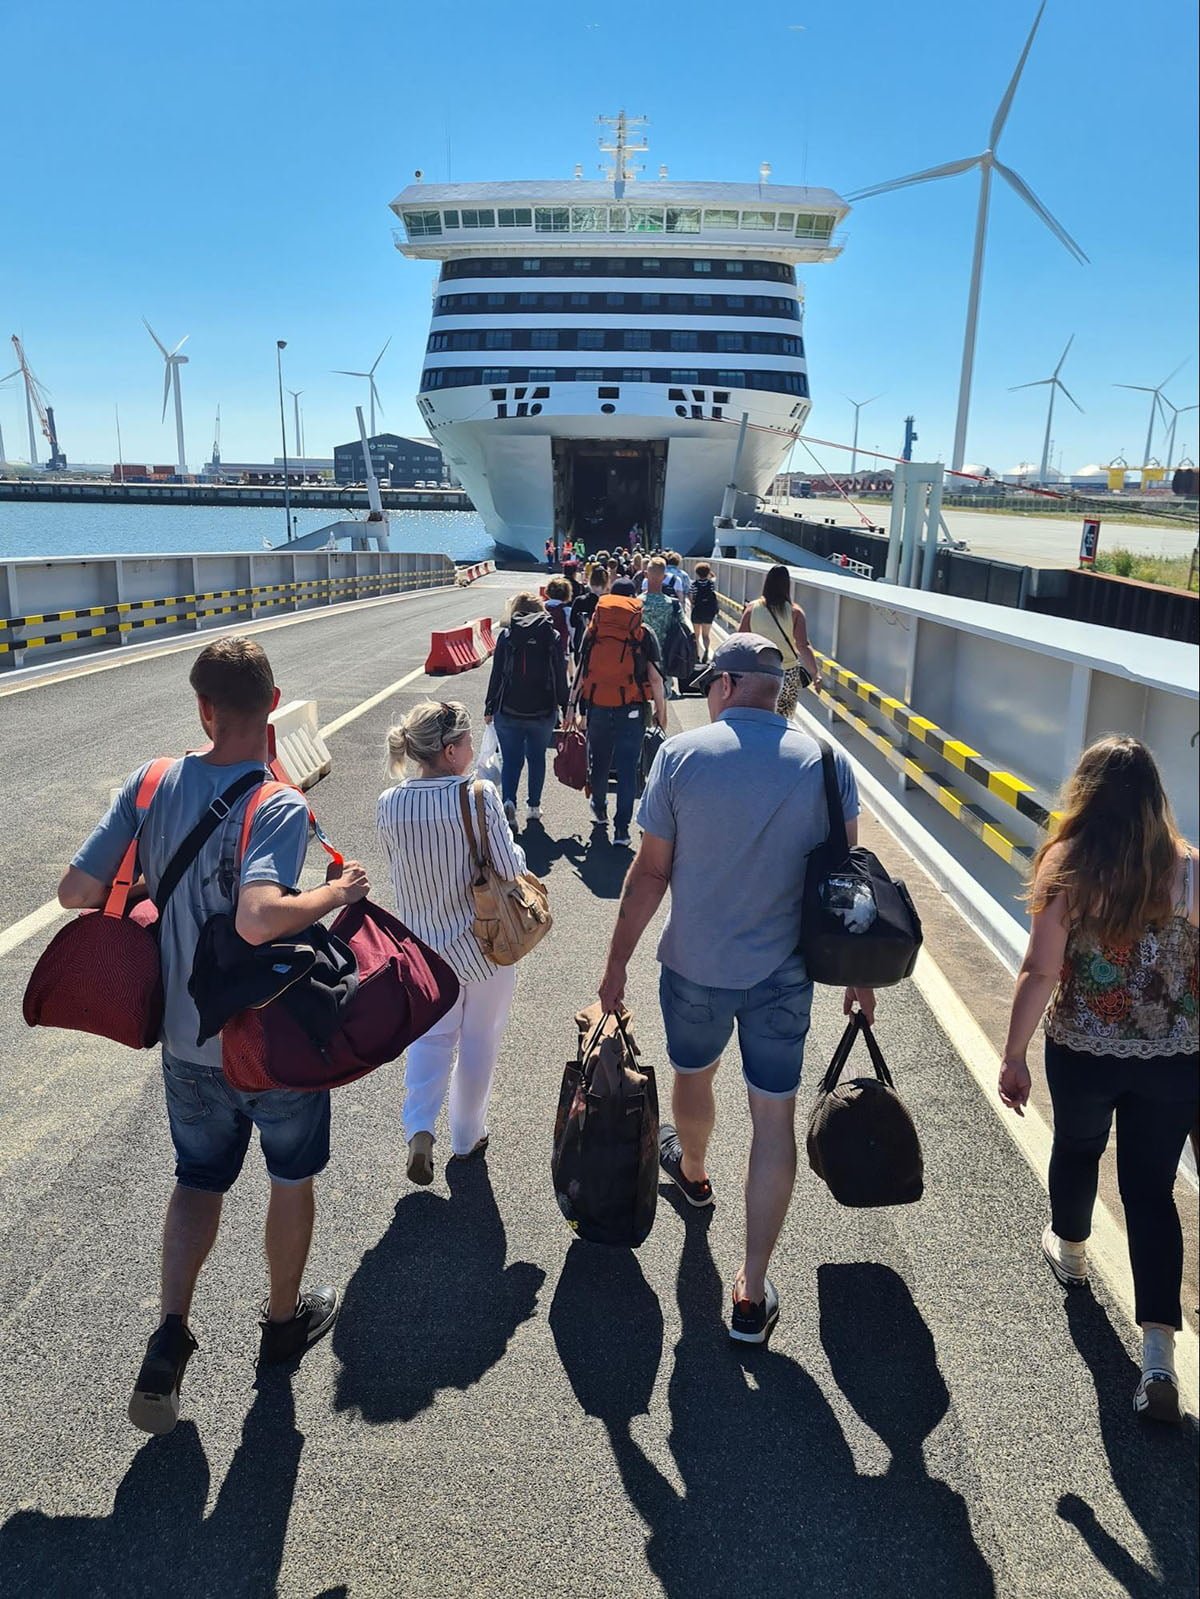 Les passagers du Holland-Norway foot doivent monter à bord par le pont-garage. Photo : Daniel Albert.